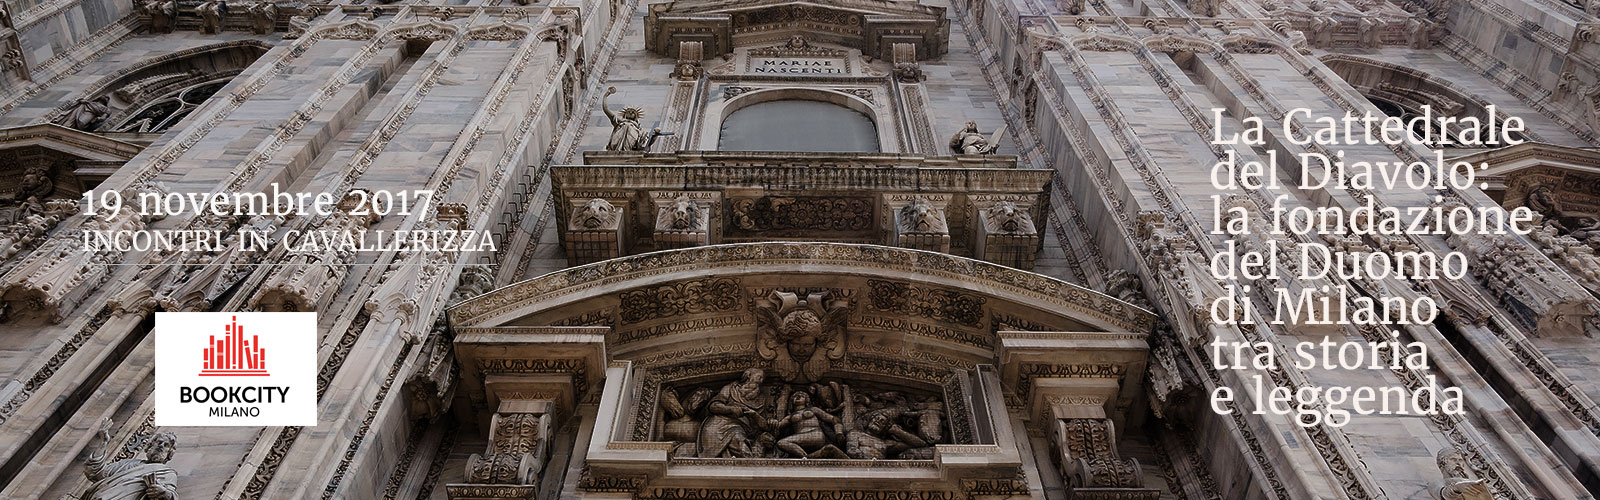 La Cattedrale del Diavolo: la fondazione del Duomo di Milano tra storia e leggenda